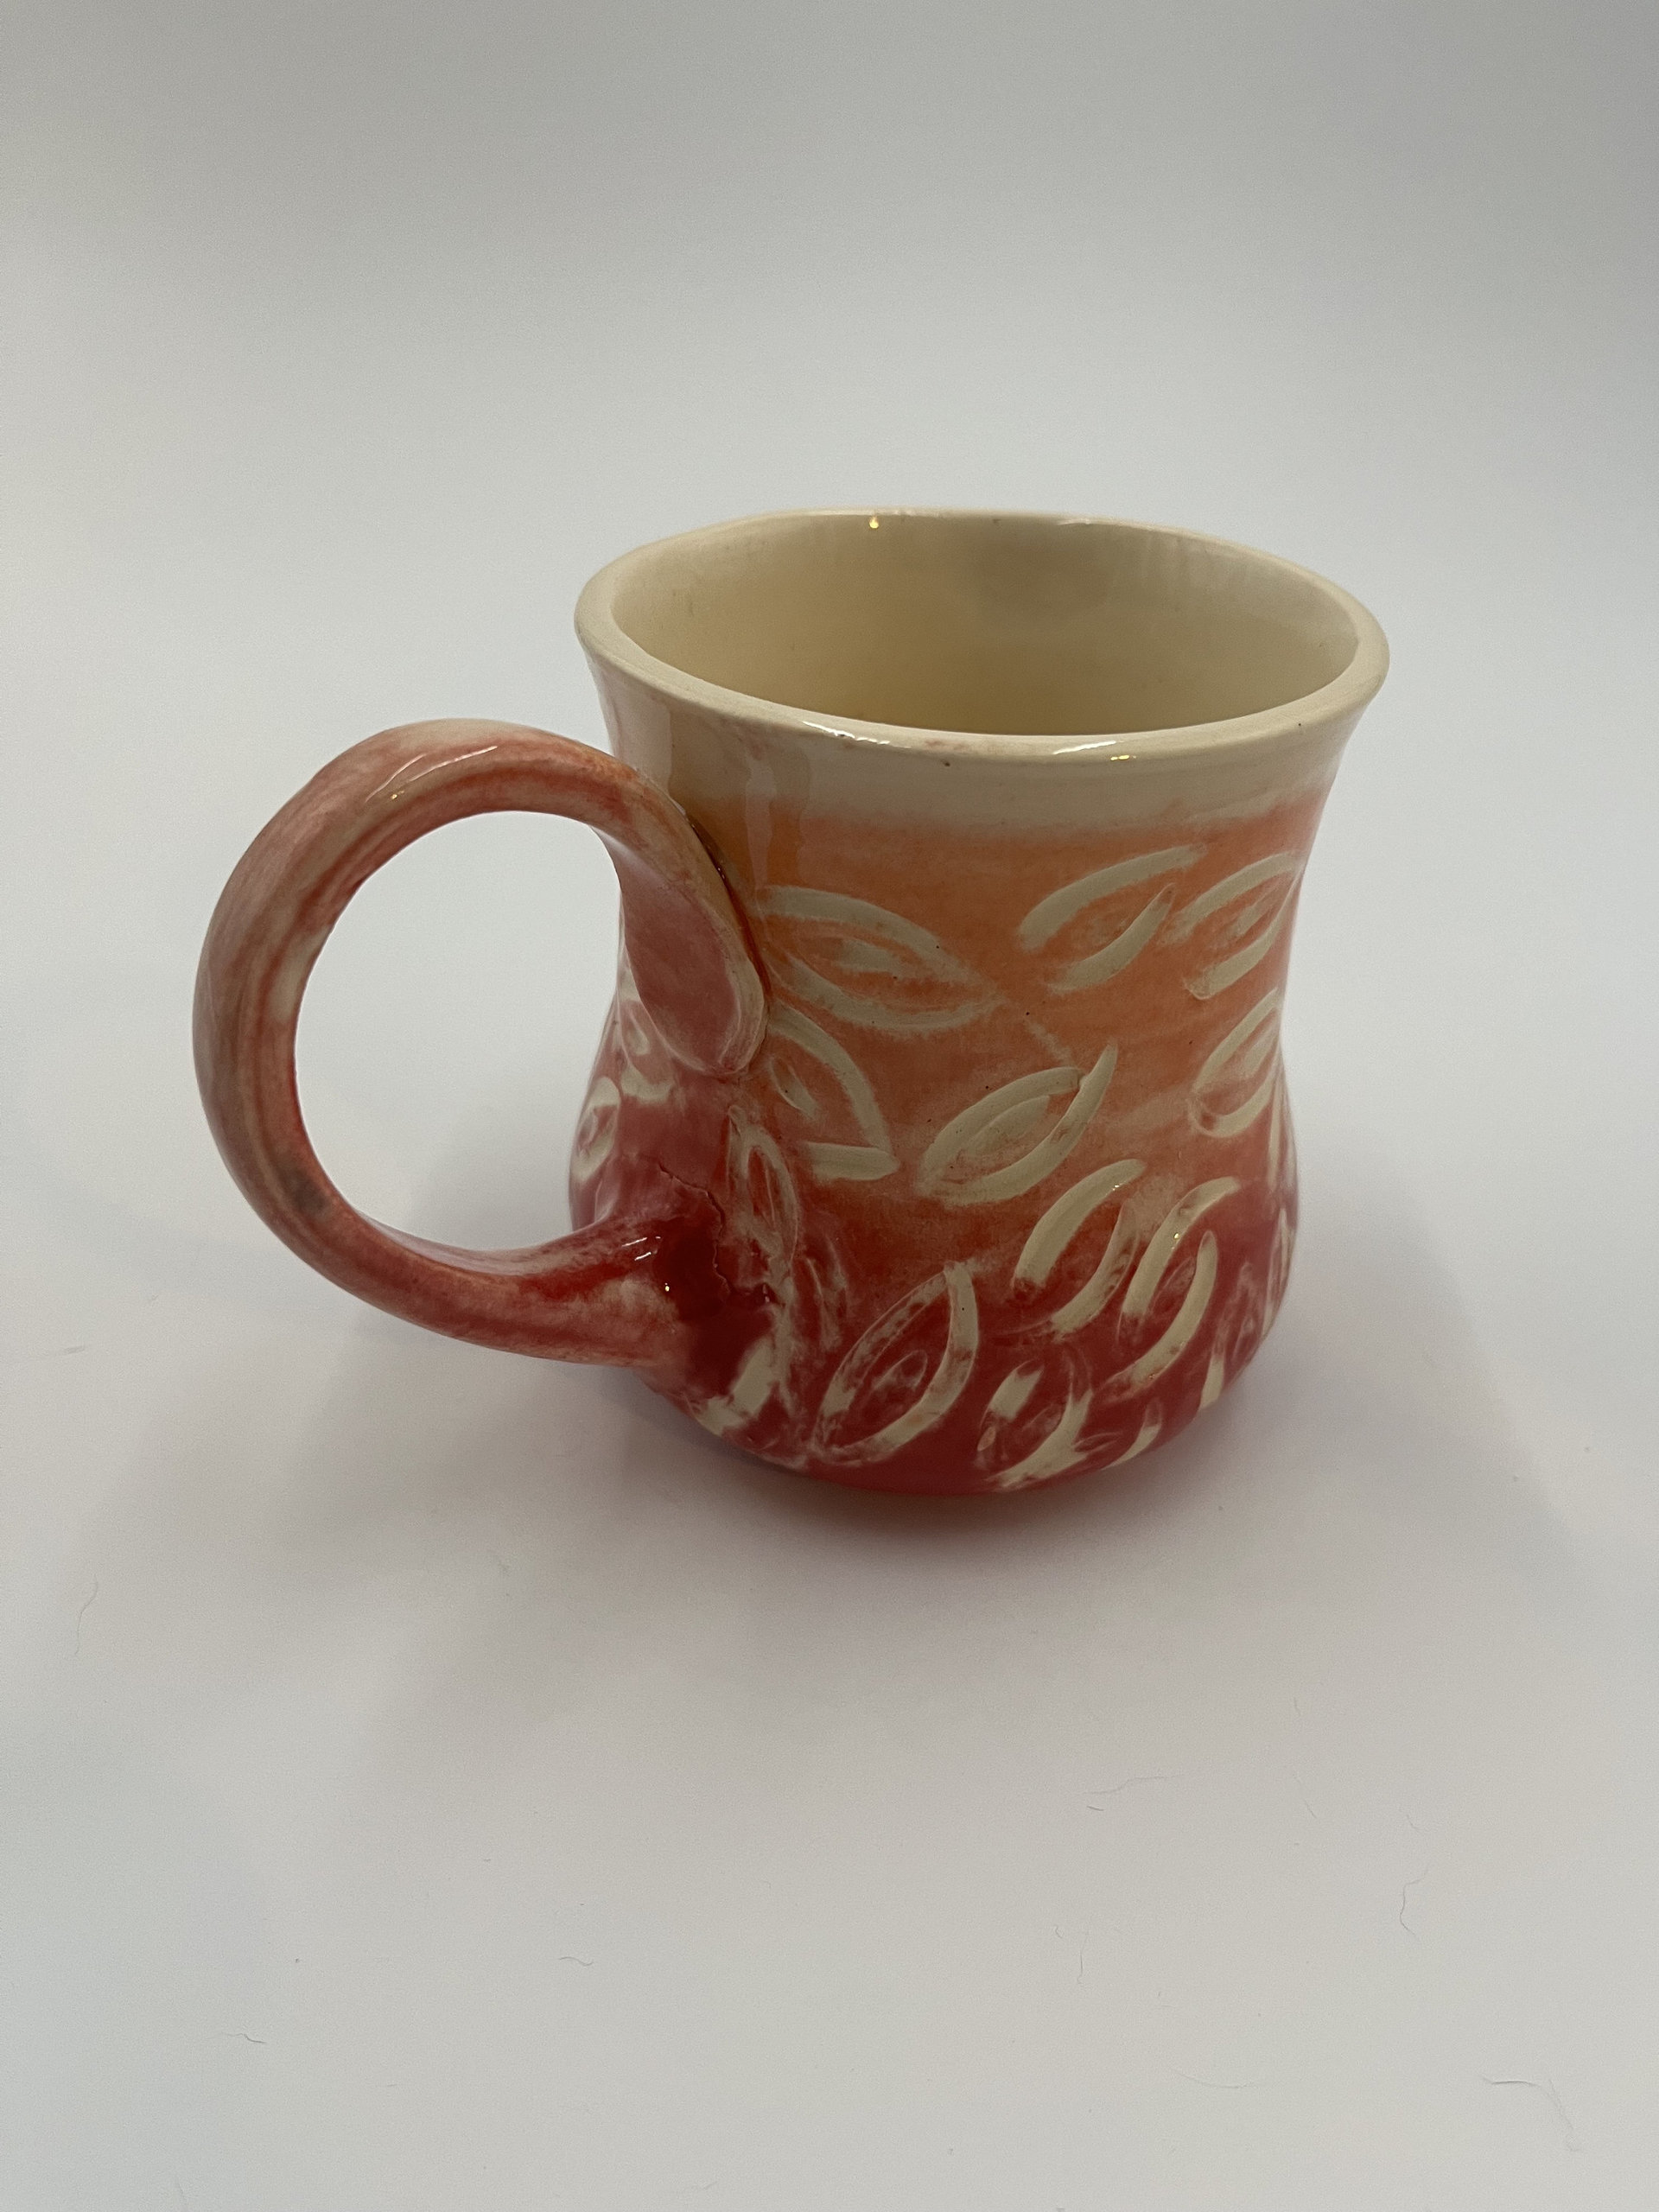 Handmade Sunset Carved Ceramic Mug